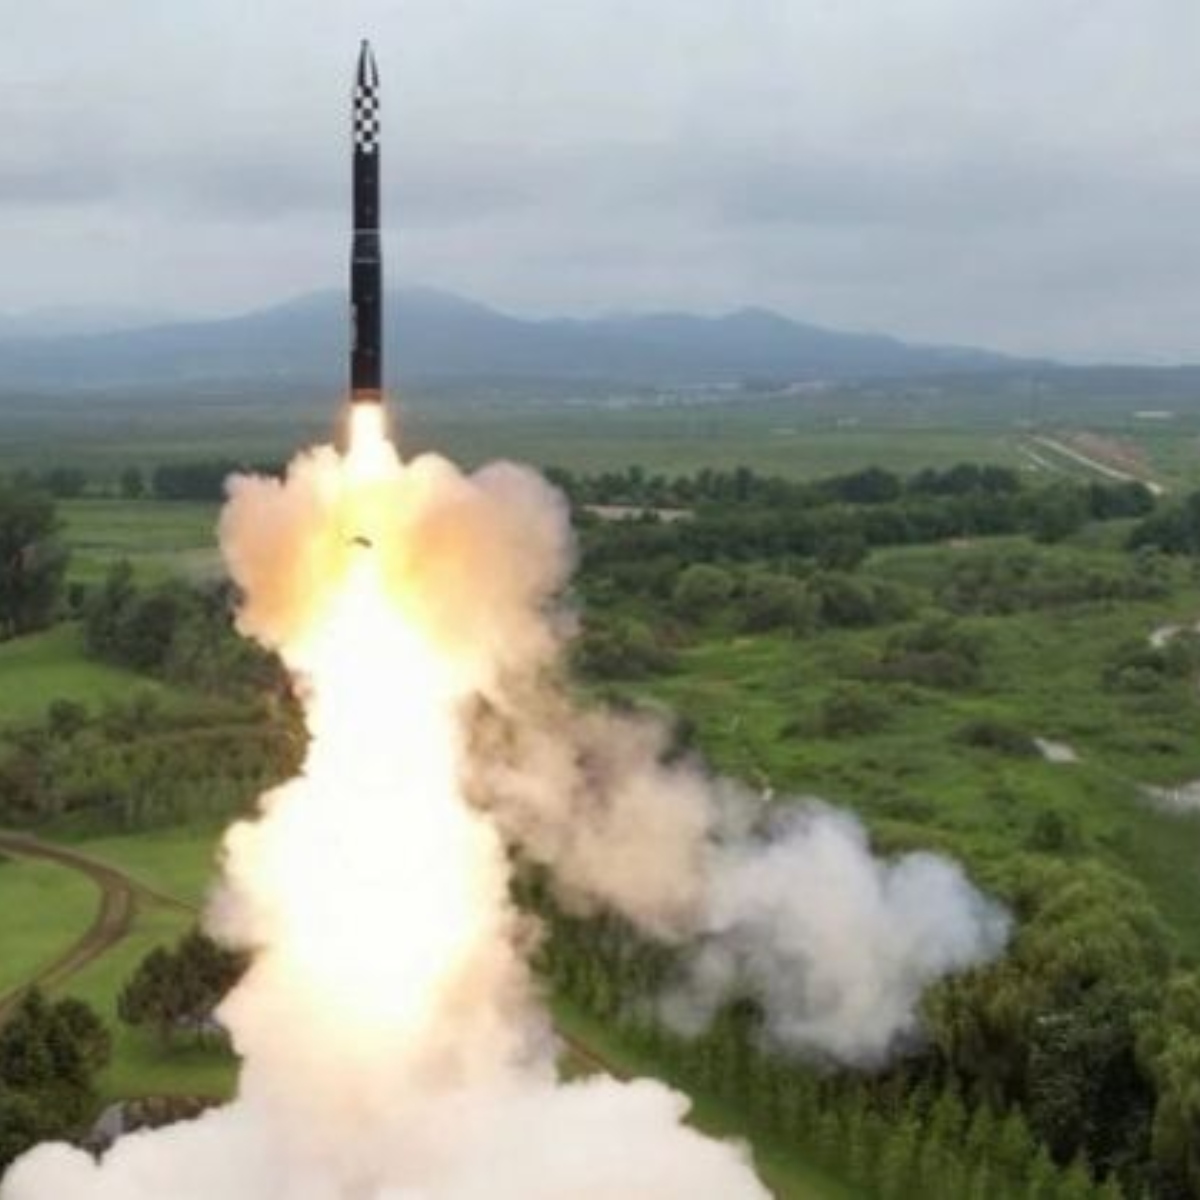  Missíl da Coreia do Norte pode atingir EUA 